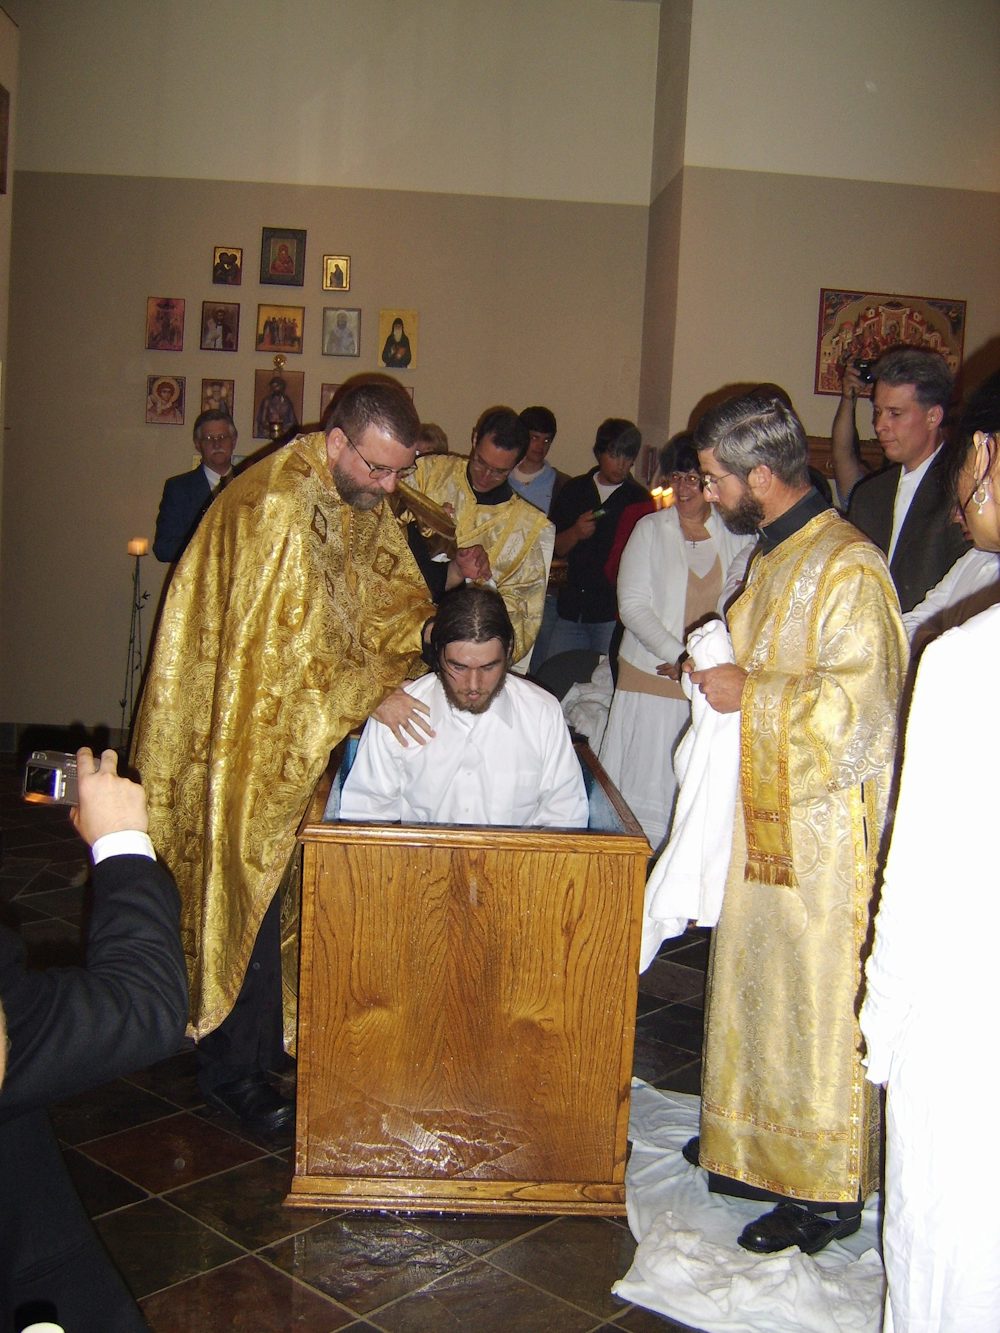 John Valadez being baptized.